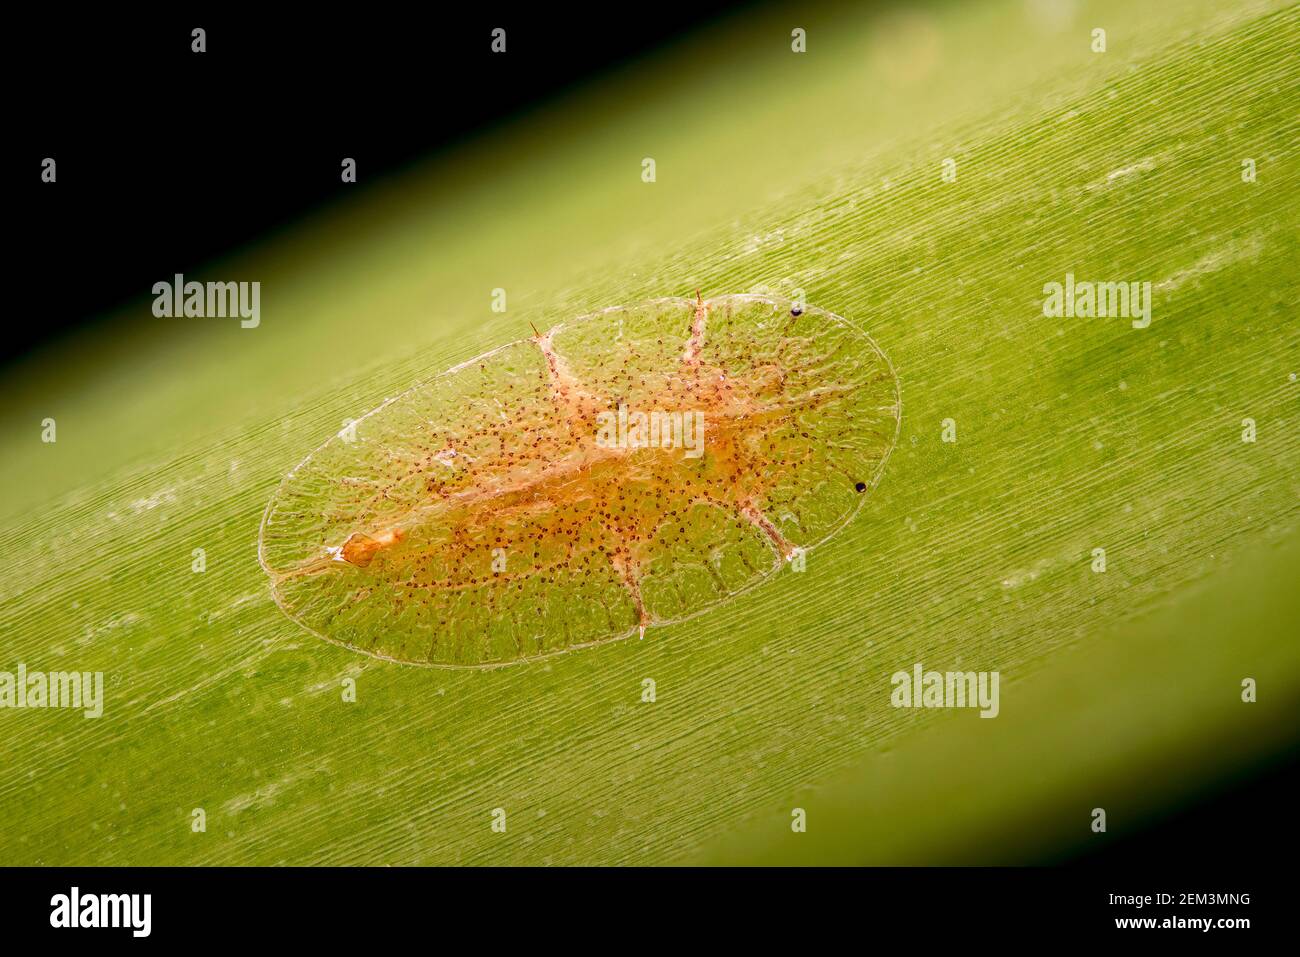 Insectos a escala y insectos de la mealy (Coccoidea), imagen de fluorescencia, imagen de microscopio de luz, ampliación x16 relacionada con 35 mm, Alemania Foto de stock